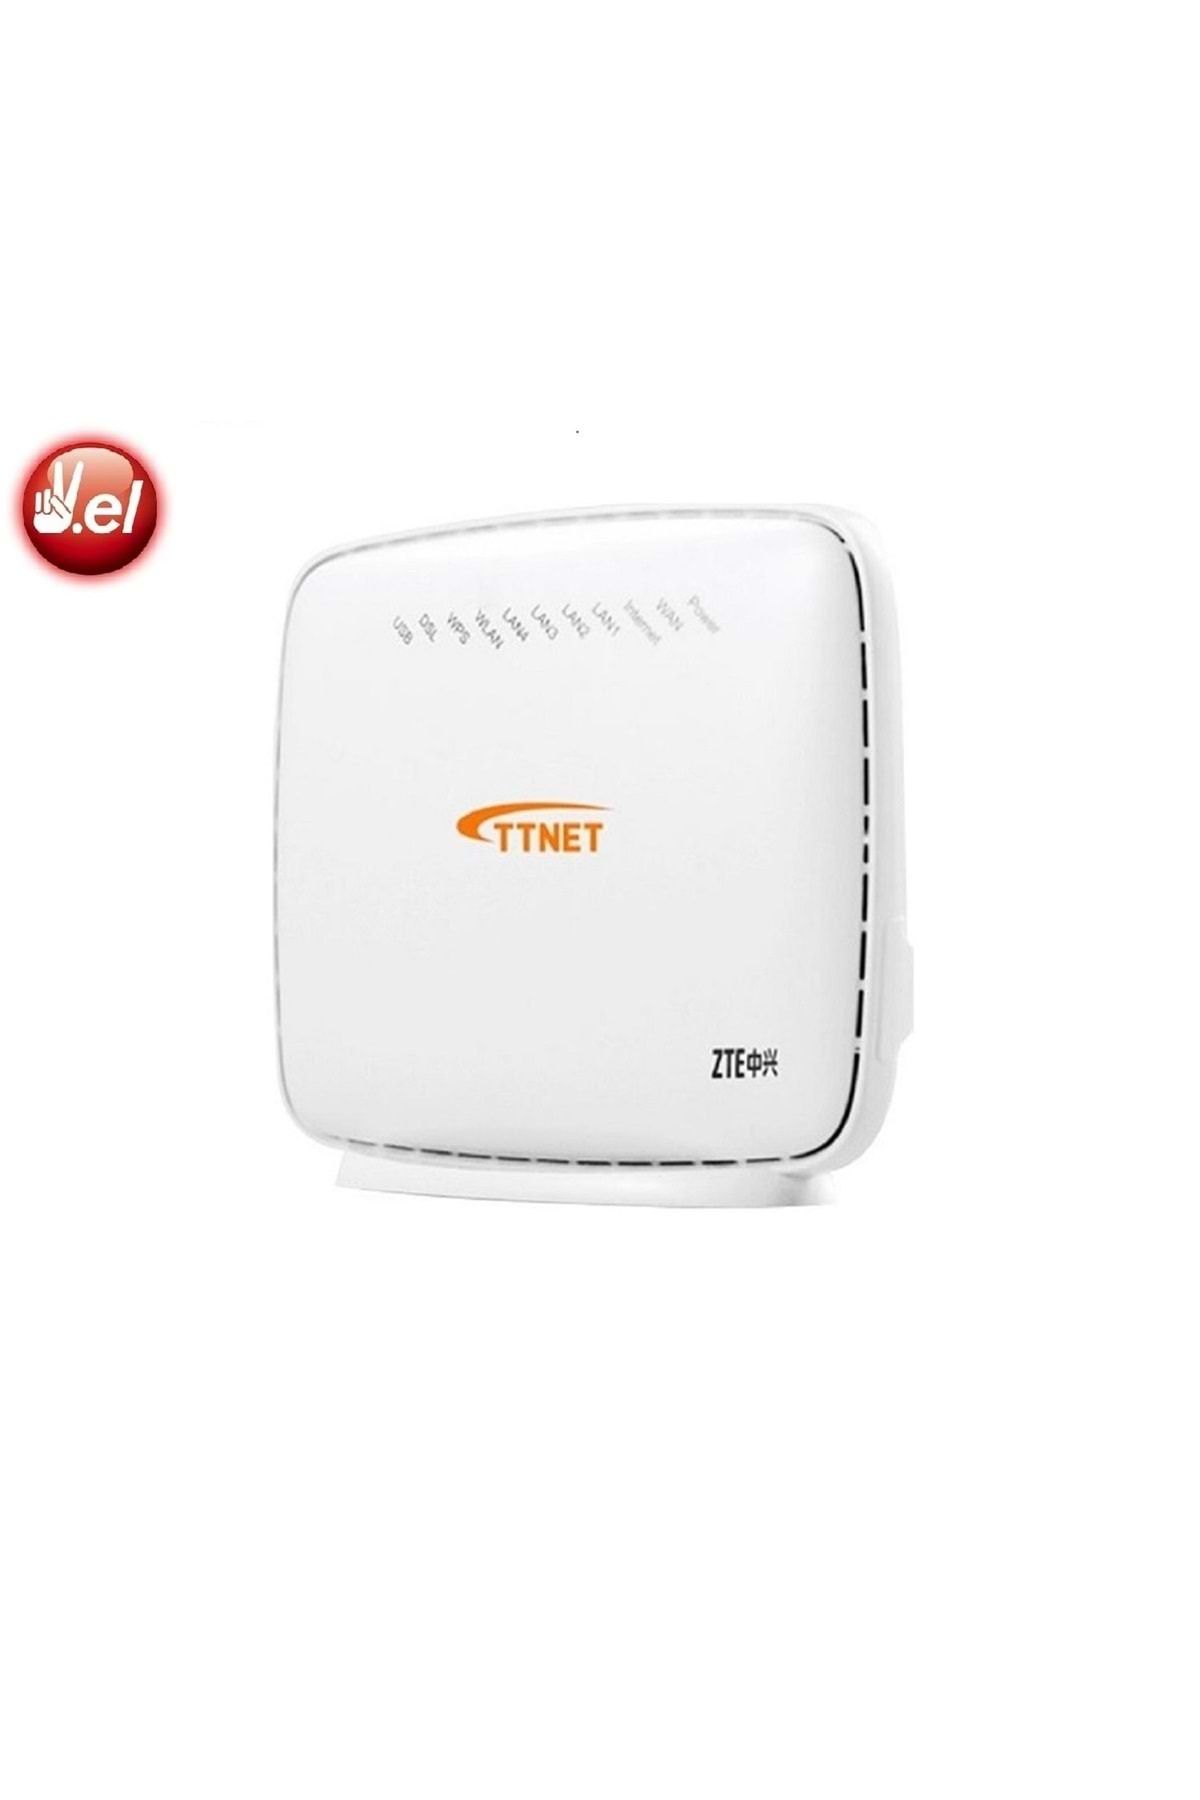 ZTE Ttnet Zxhn H168n 300mbps Wifi Vdsl2/fiber Modem